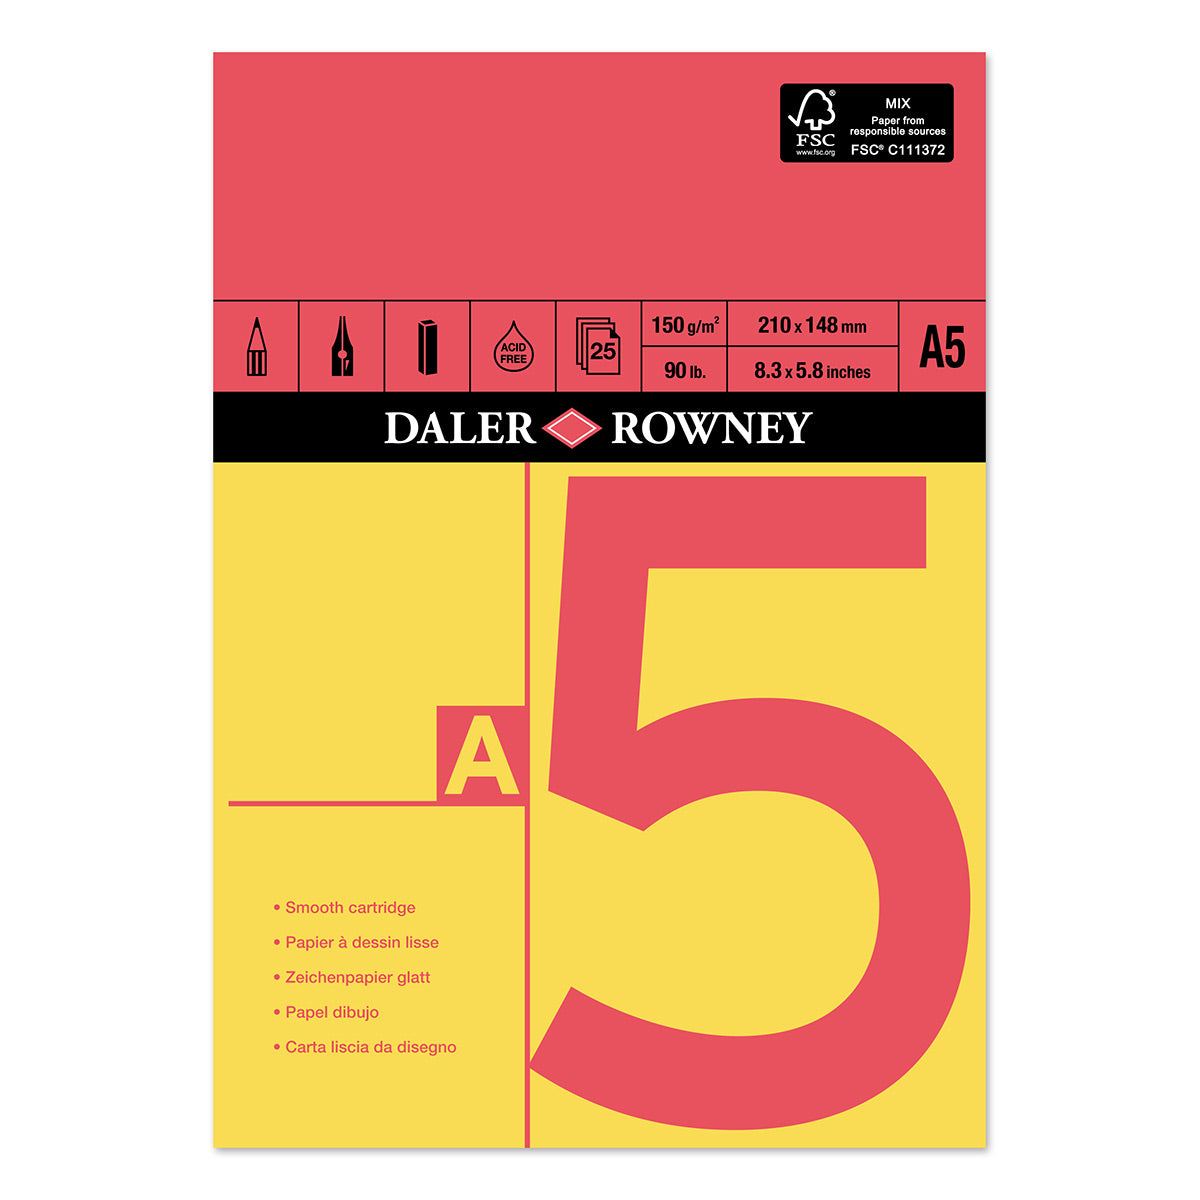 Daler Rowney - Cartouche gommée rouge et jaune - A5 - 150 g/m²